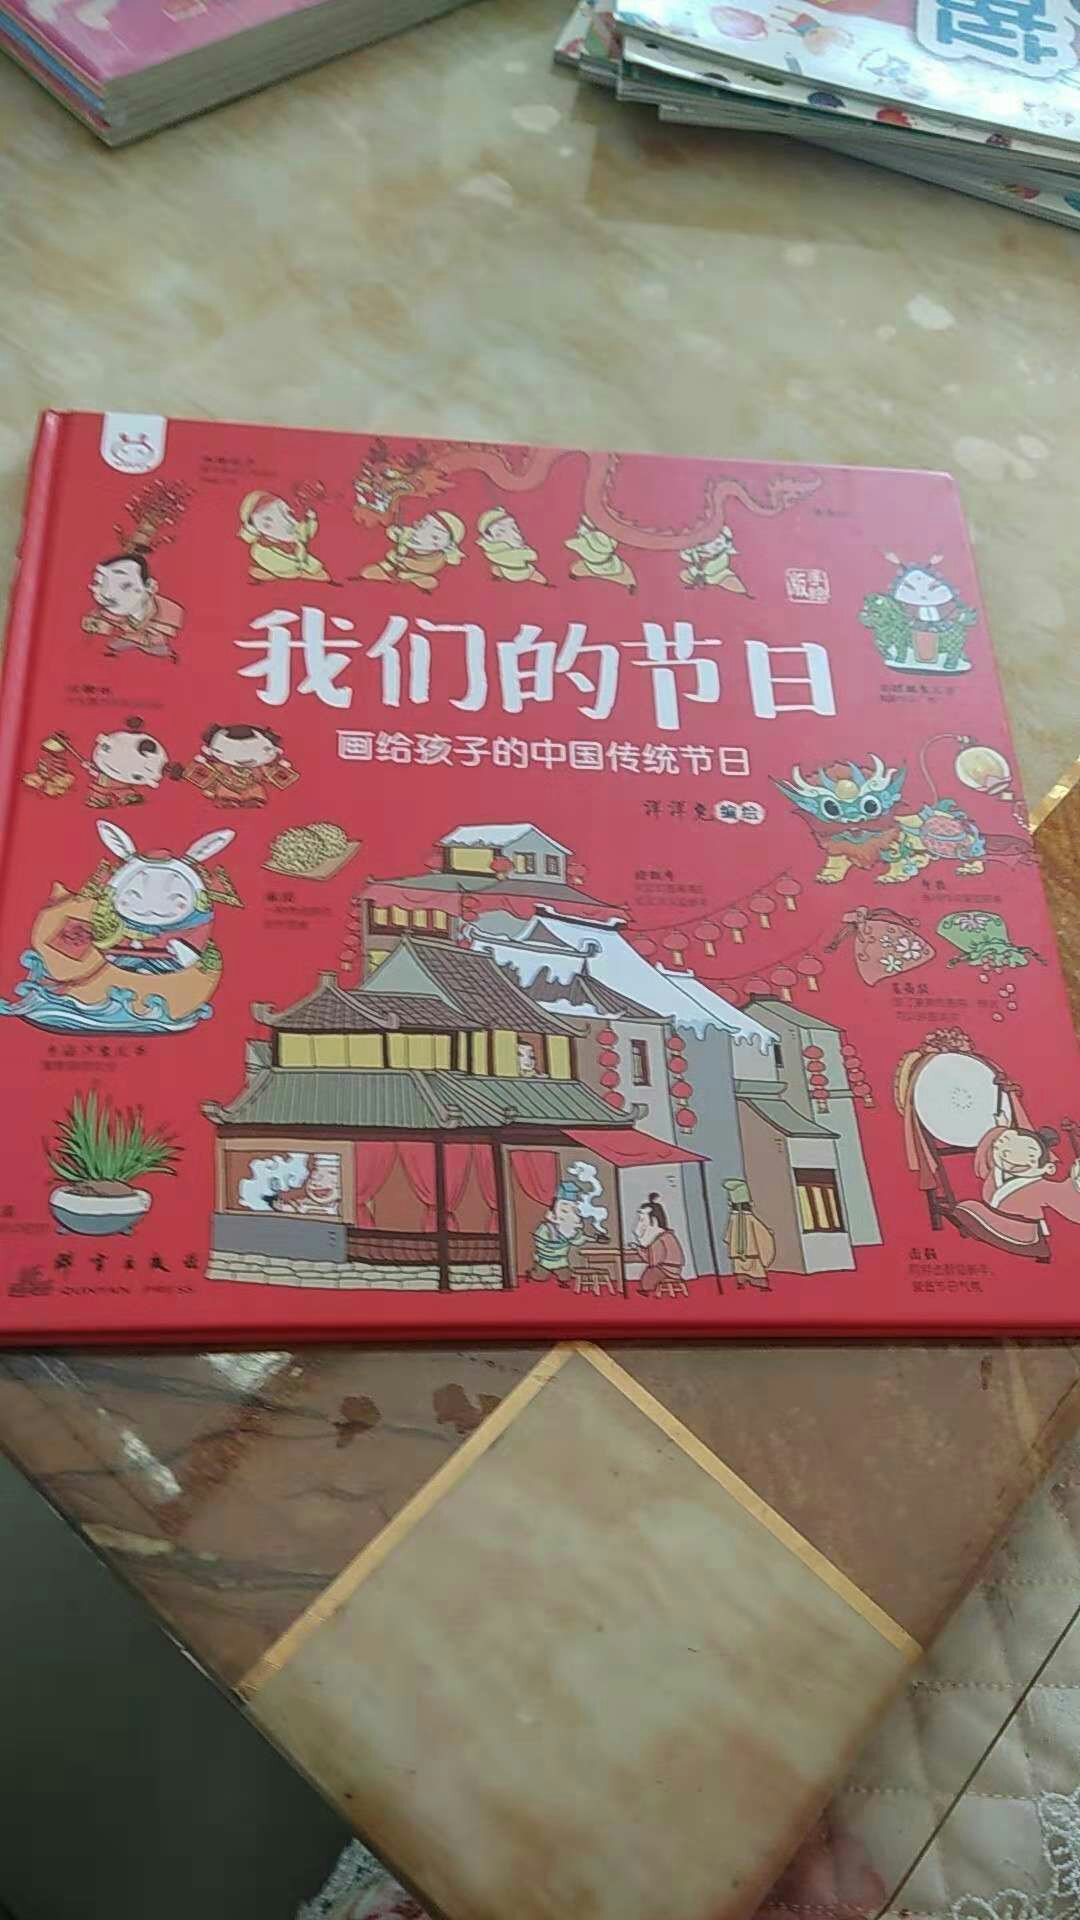 中国传统节日介绍得不错